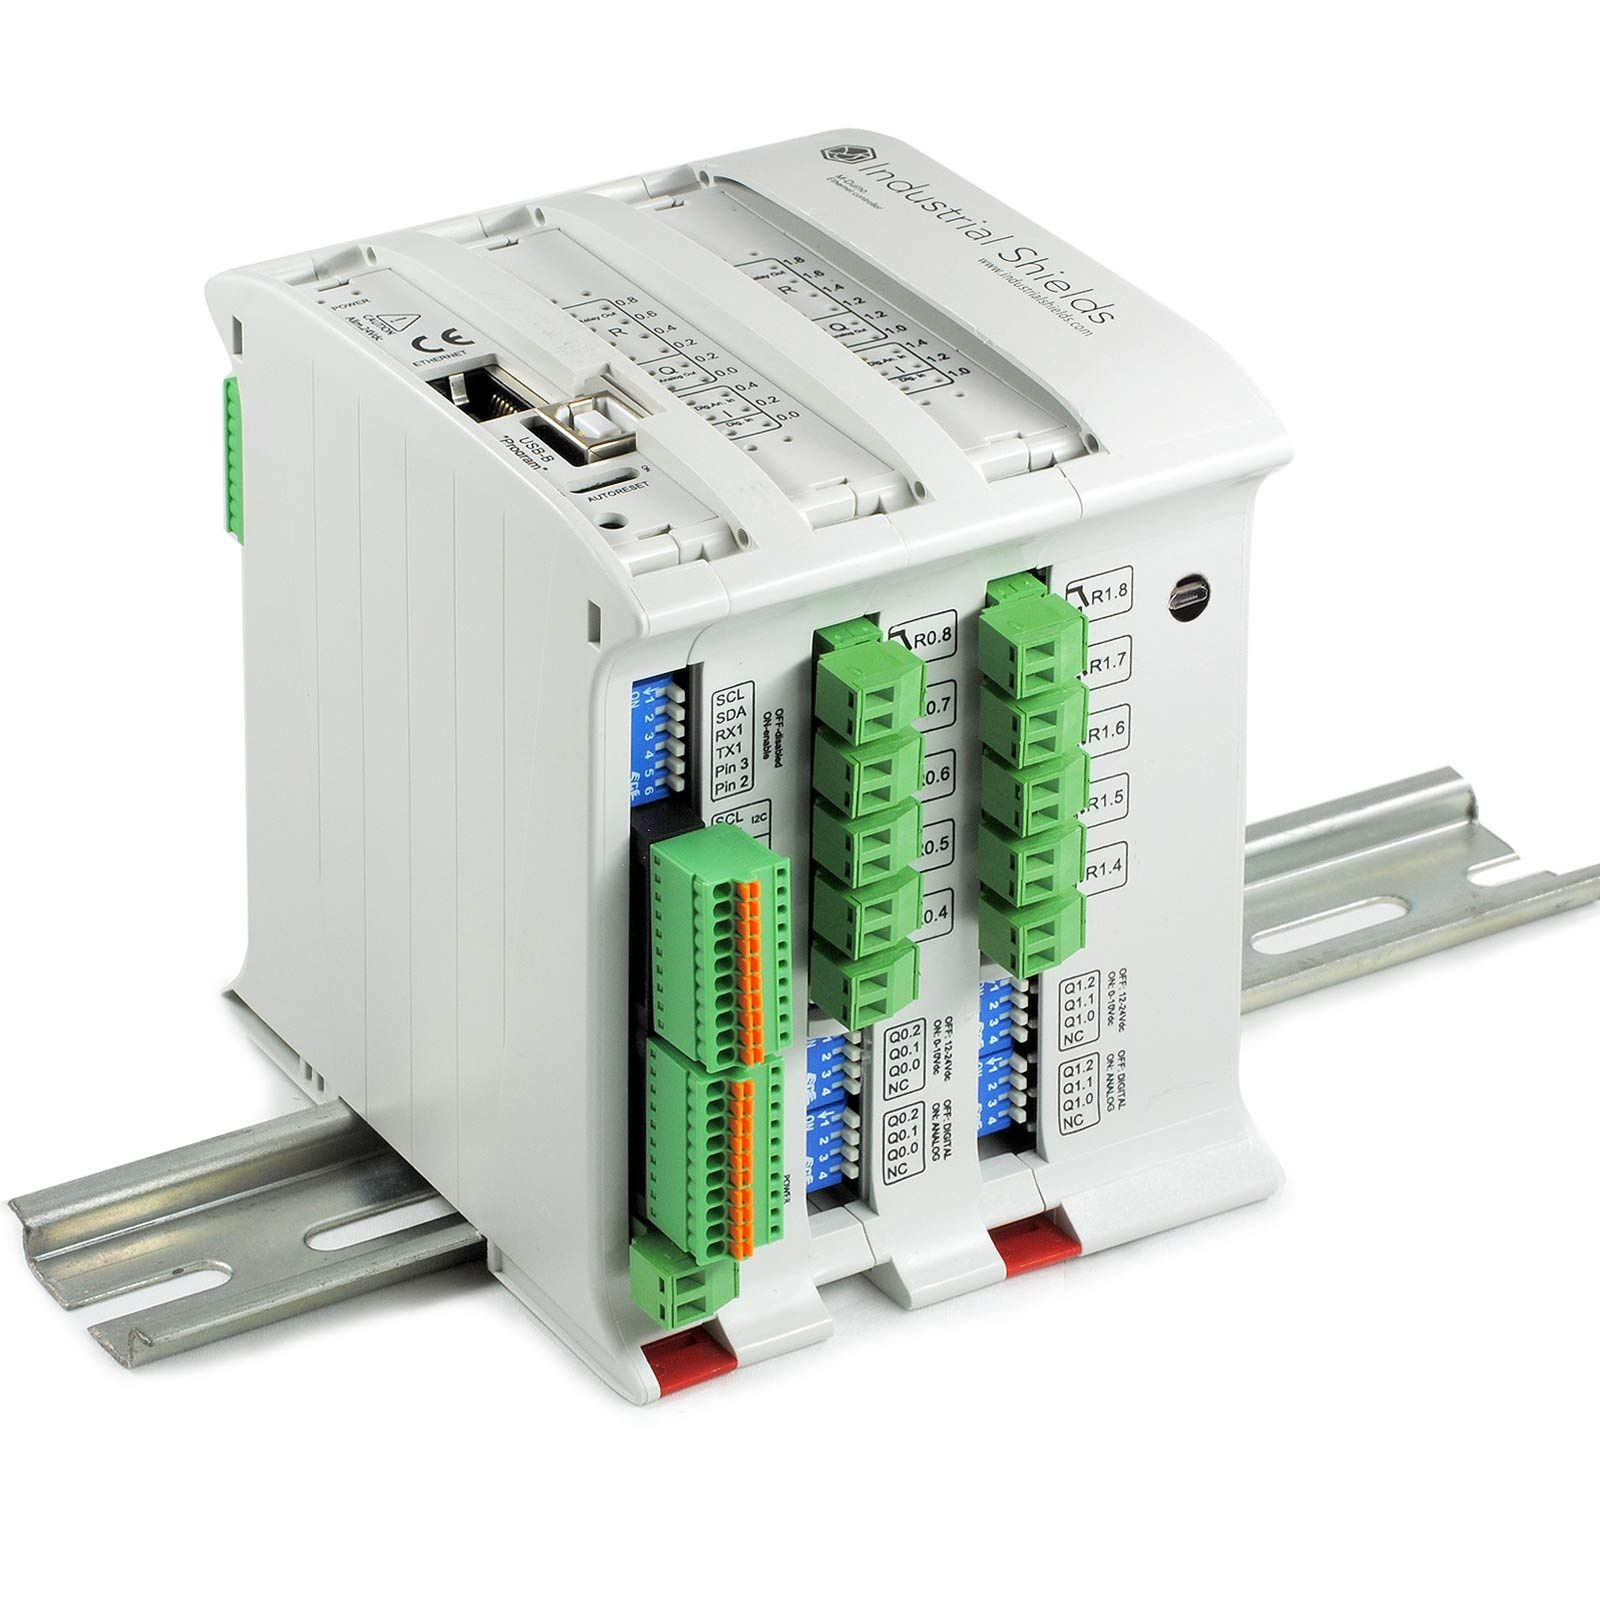 Objetivos - Automatización PLC Arduino para el etiquetado industrial